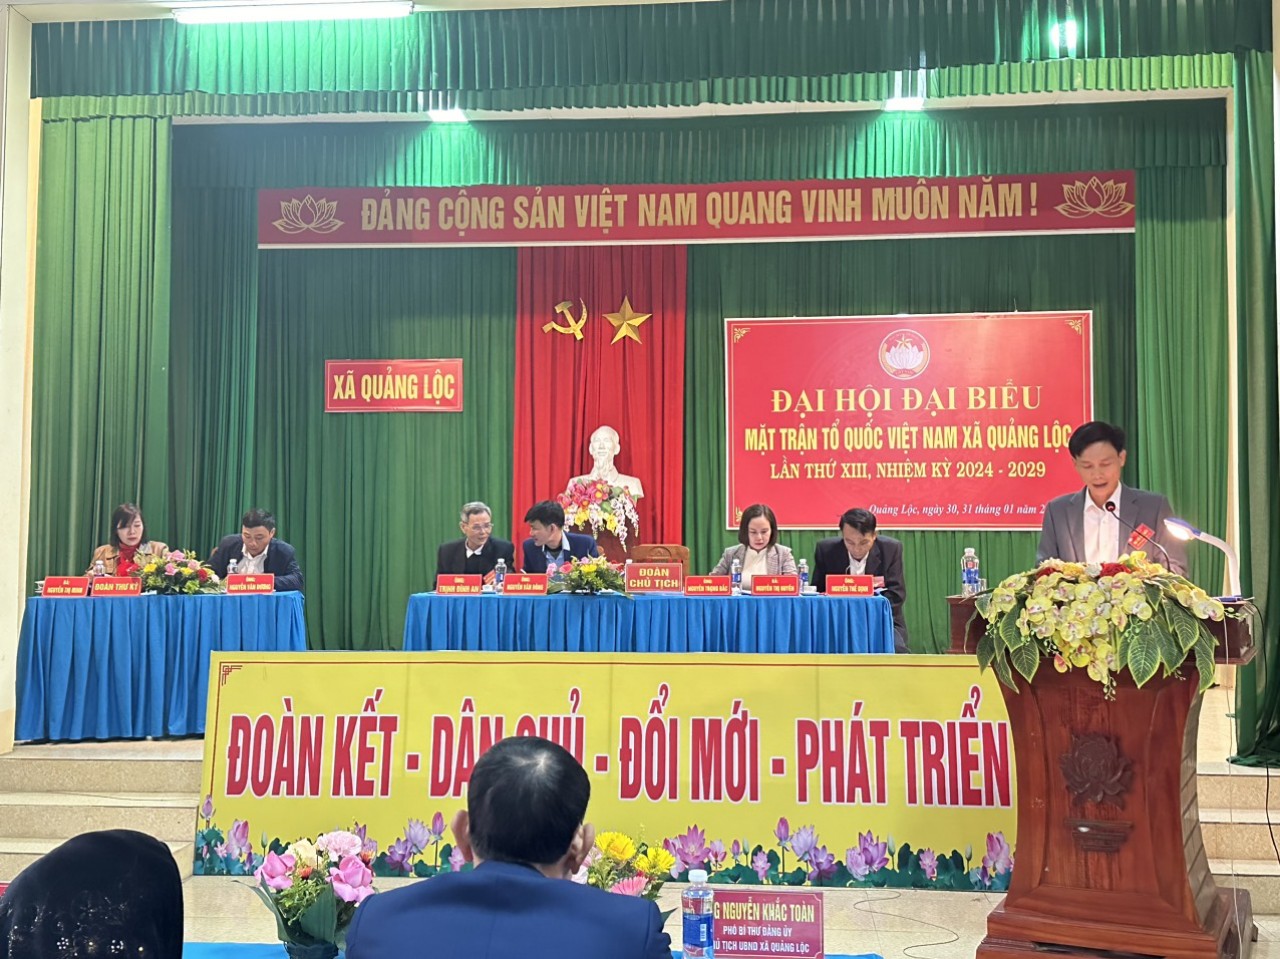 Đại hội đại biểu MTTQ Việt Nam xã Quảng Lộc, lần thứ XIII, nhiệm kỳ 2024 – 2029